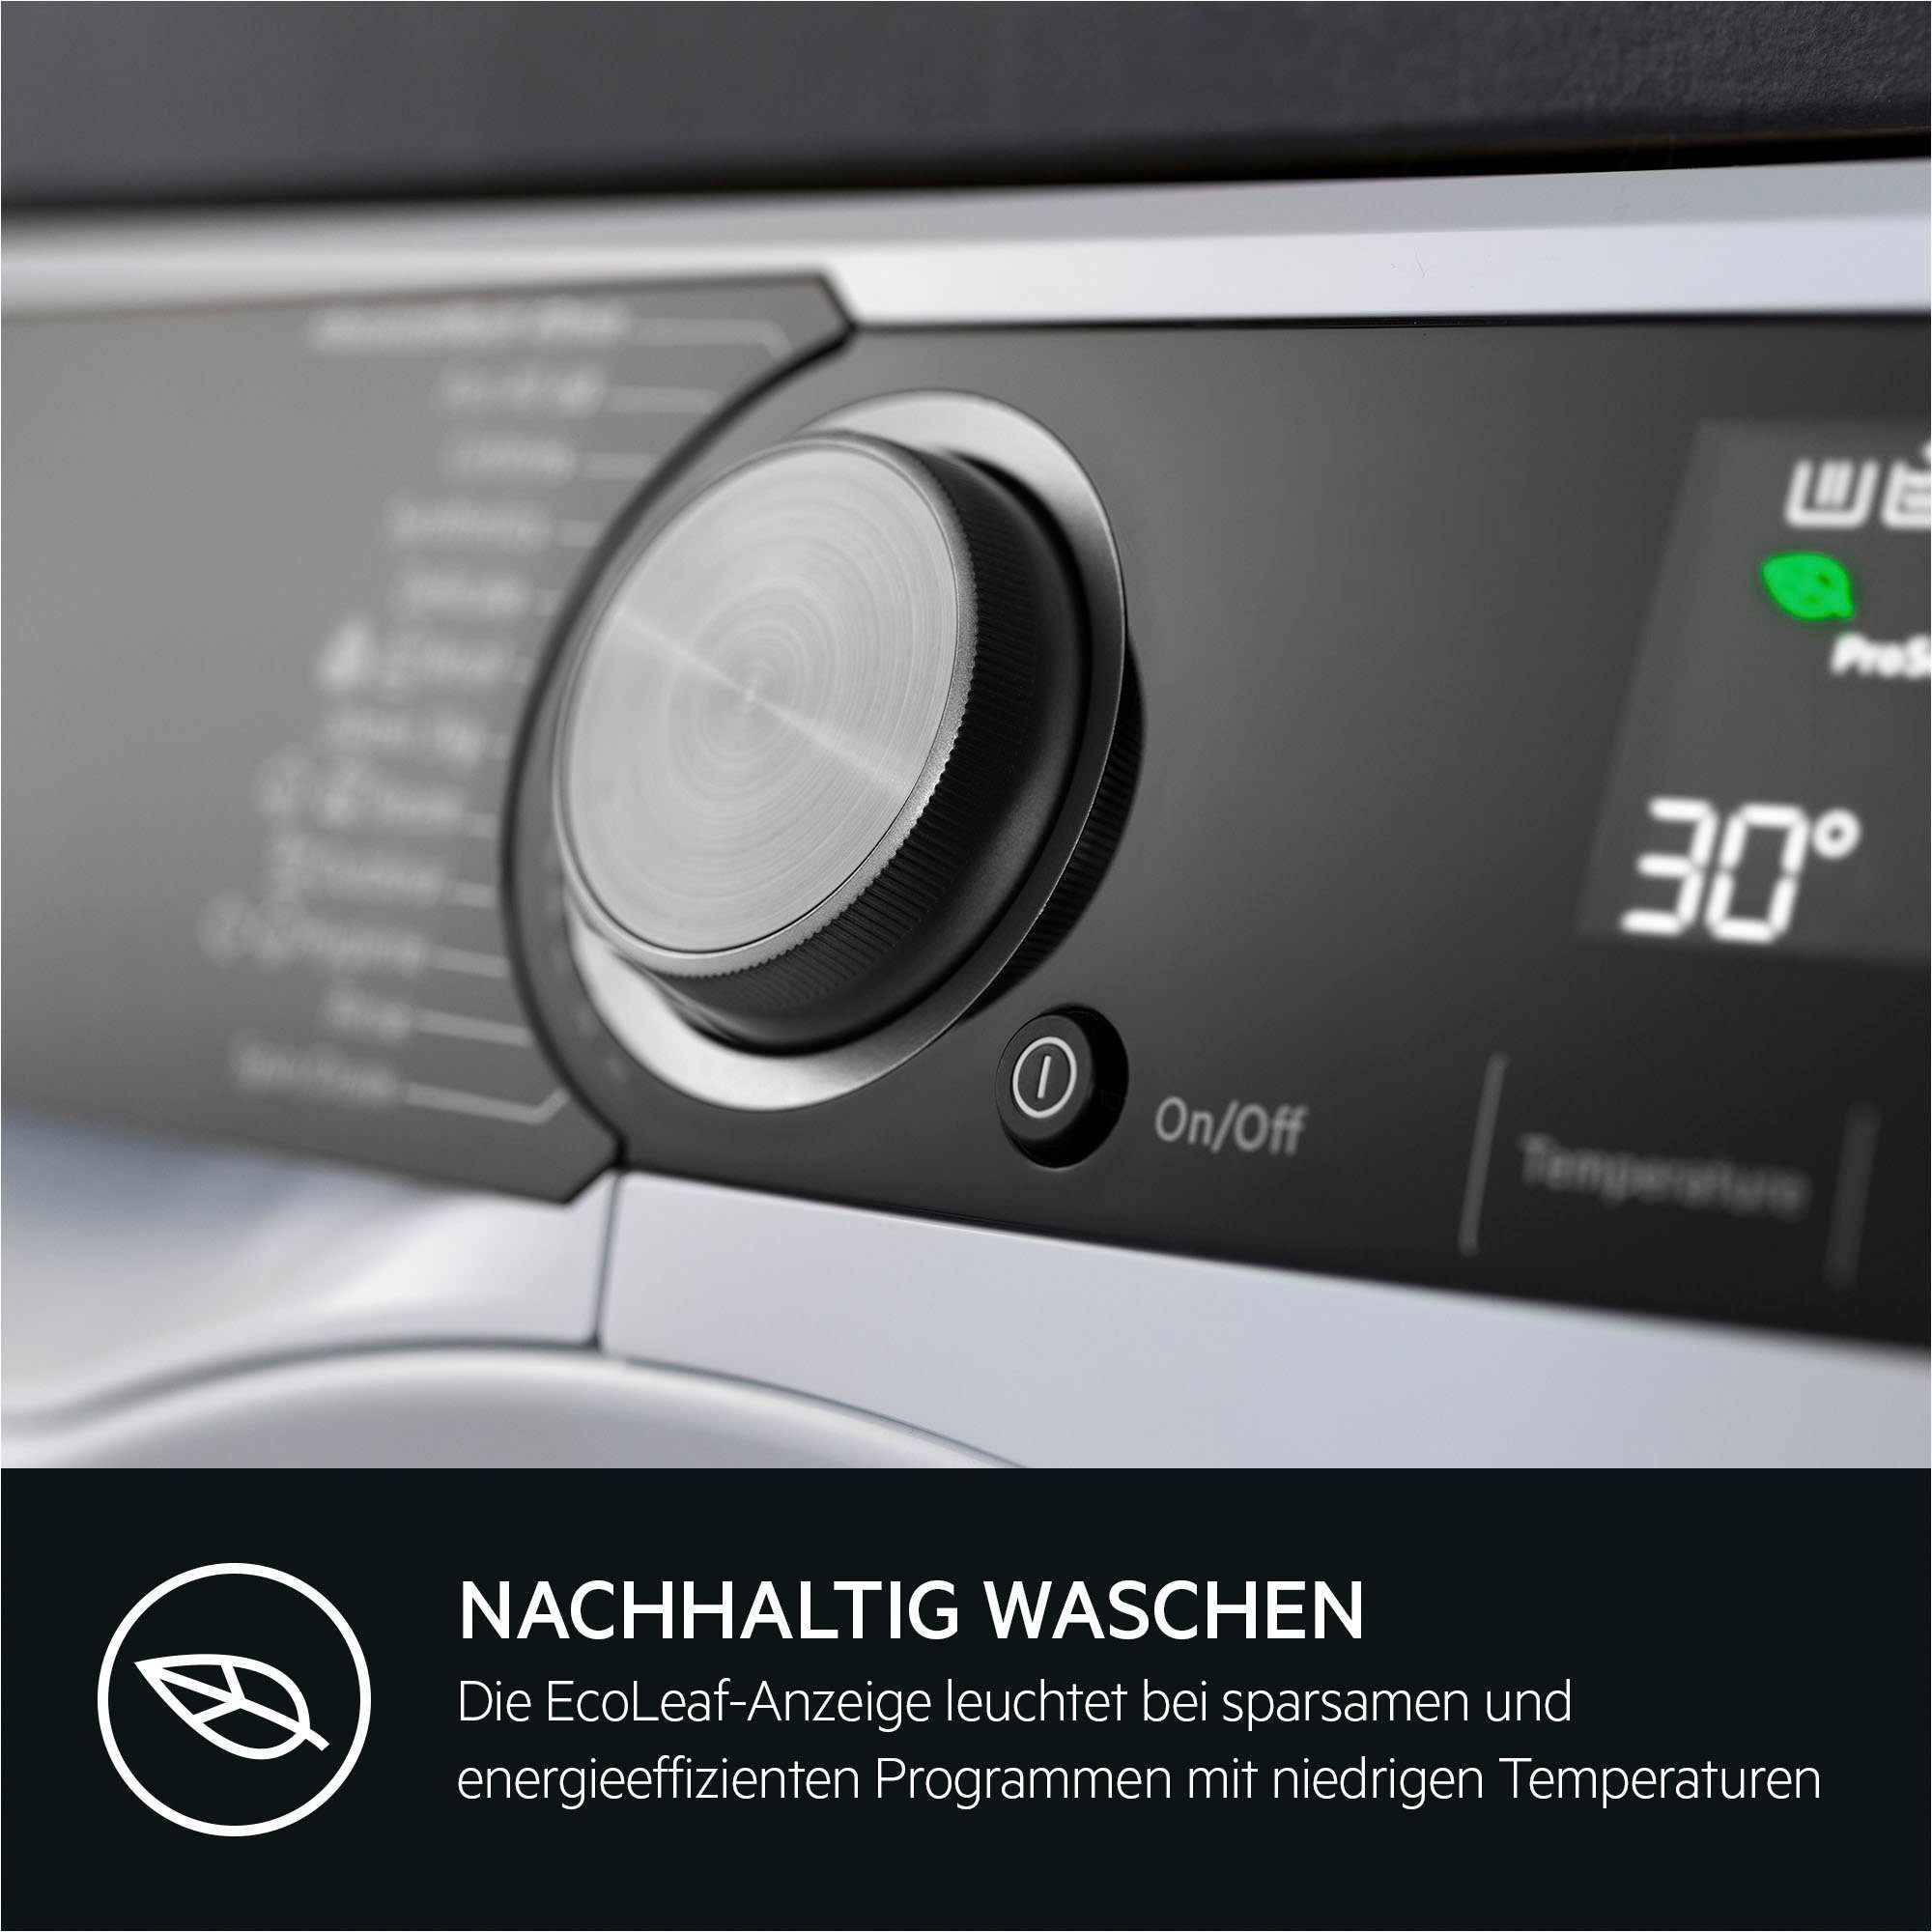 AEG Waschmaschine LR7A70690, 9 % für ProSteam 96 Wasserverbrauch kg, 1600 Dampf-Programm - U/min, weniger